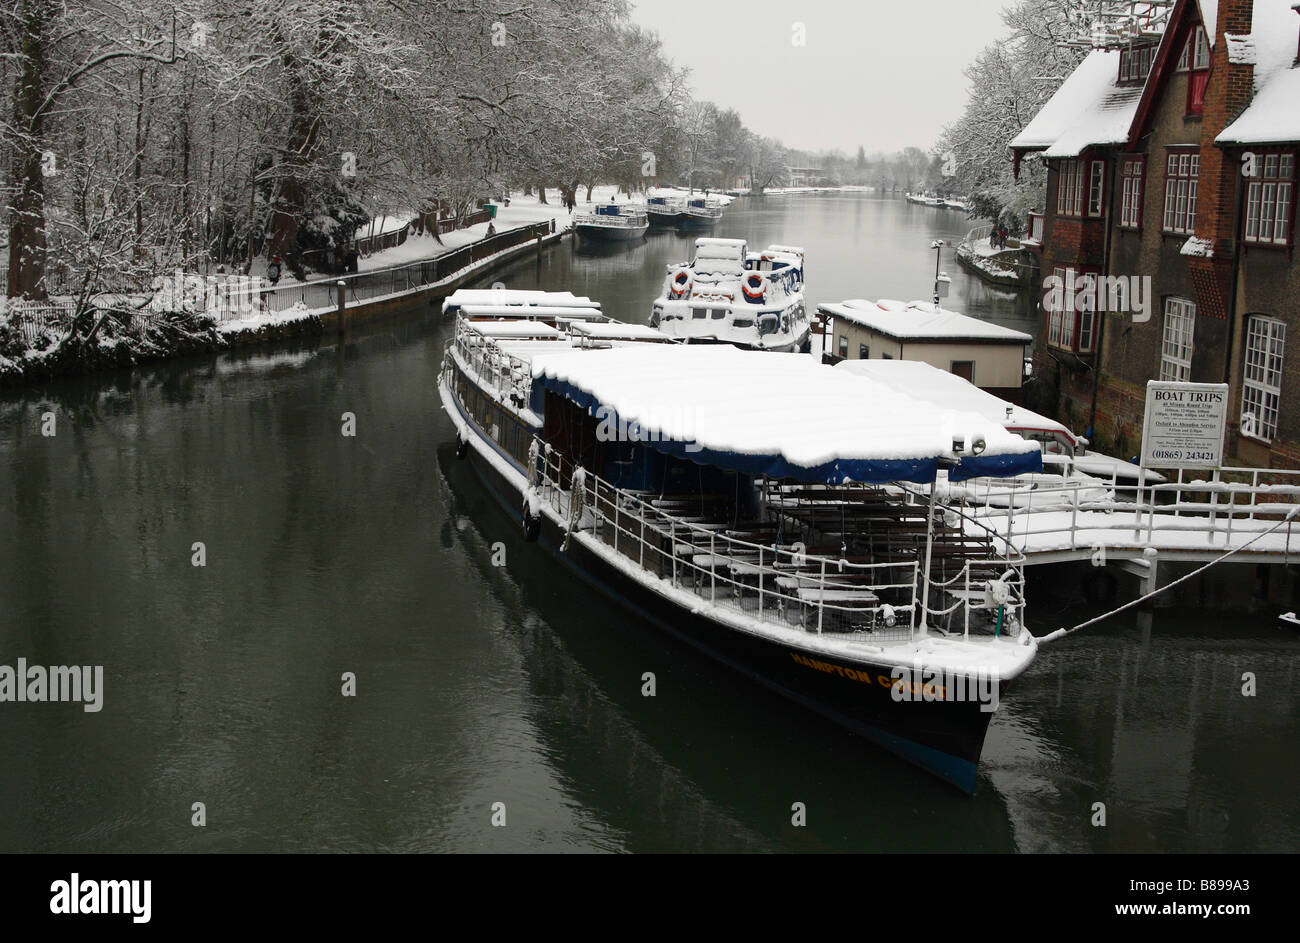 Bateau de tourisme sur la Tamise [couverts de neige blanche, vue du pont 'folie', Oxford, Angleterre, Royaume-Uni, scène d'hiver Banque D'Images